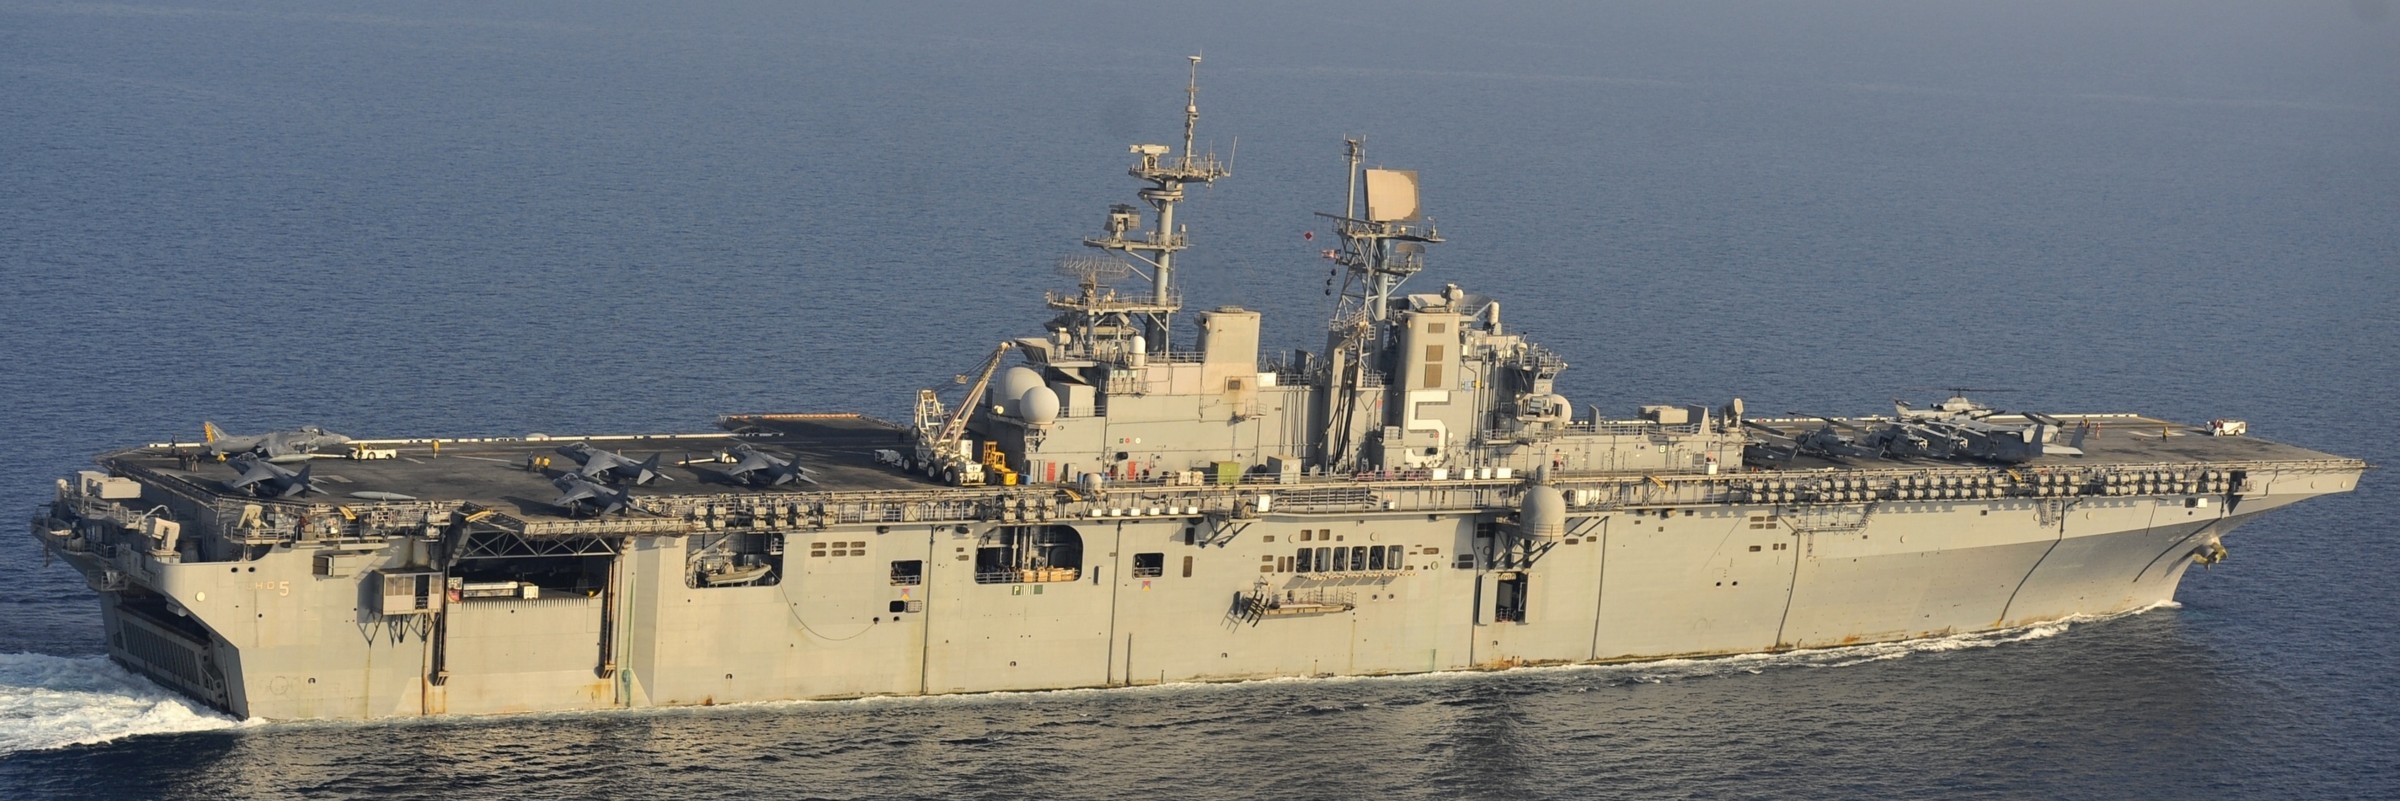 lhd-5 uss bataan wasp class amphibious assault ship dock landing helicopter us navy vmm-263 marines arabian gulf 2014